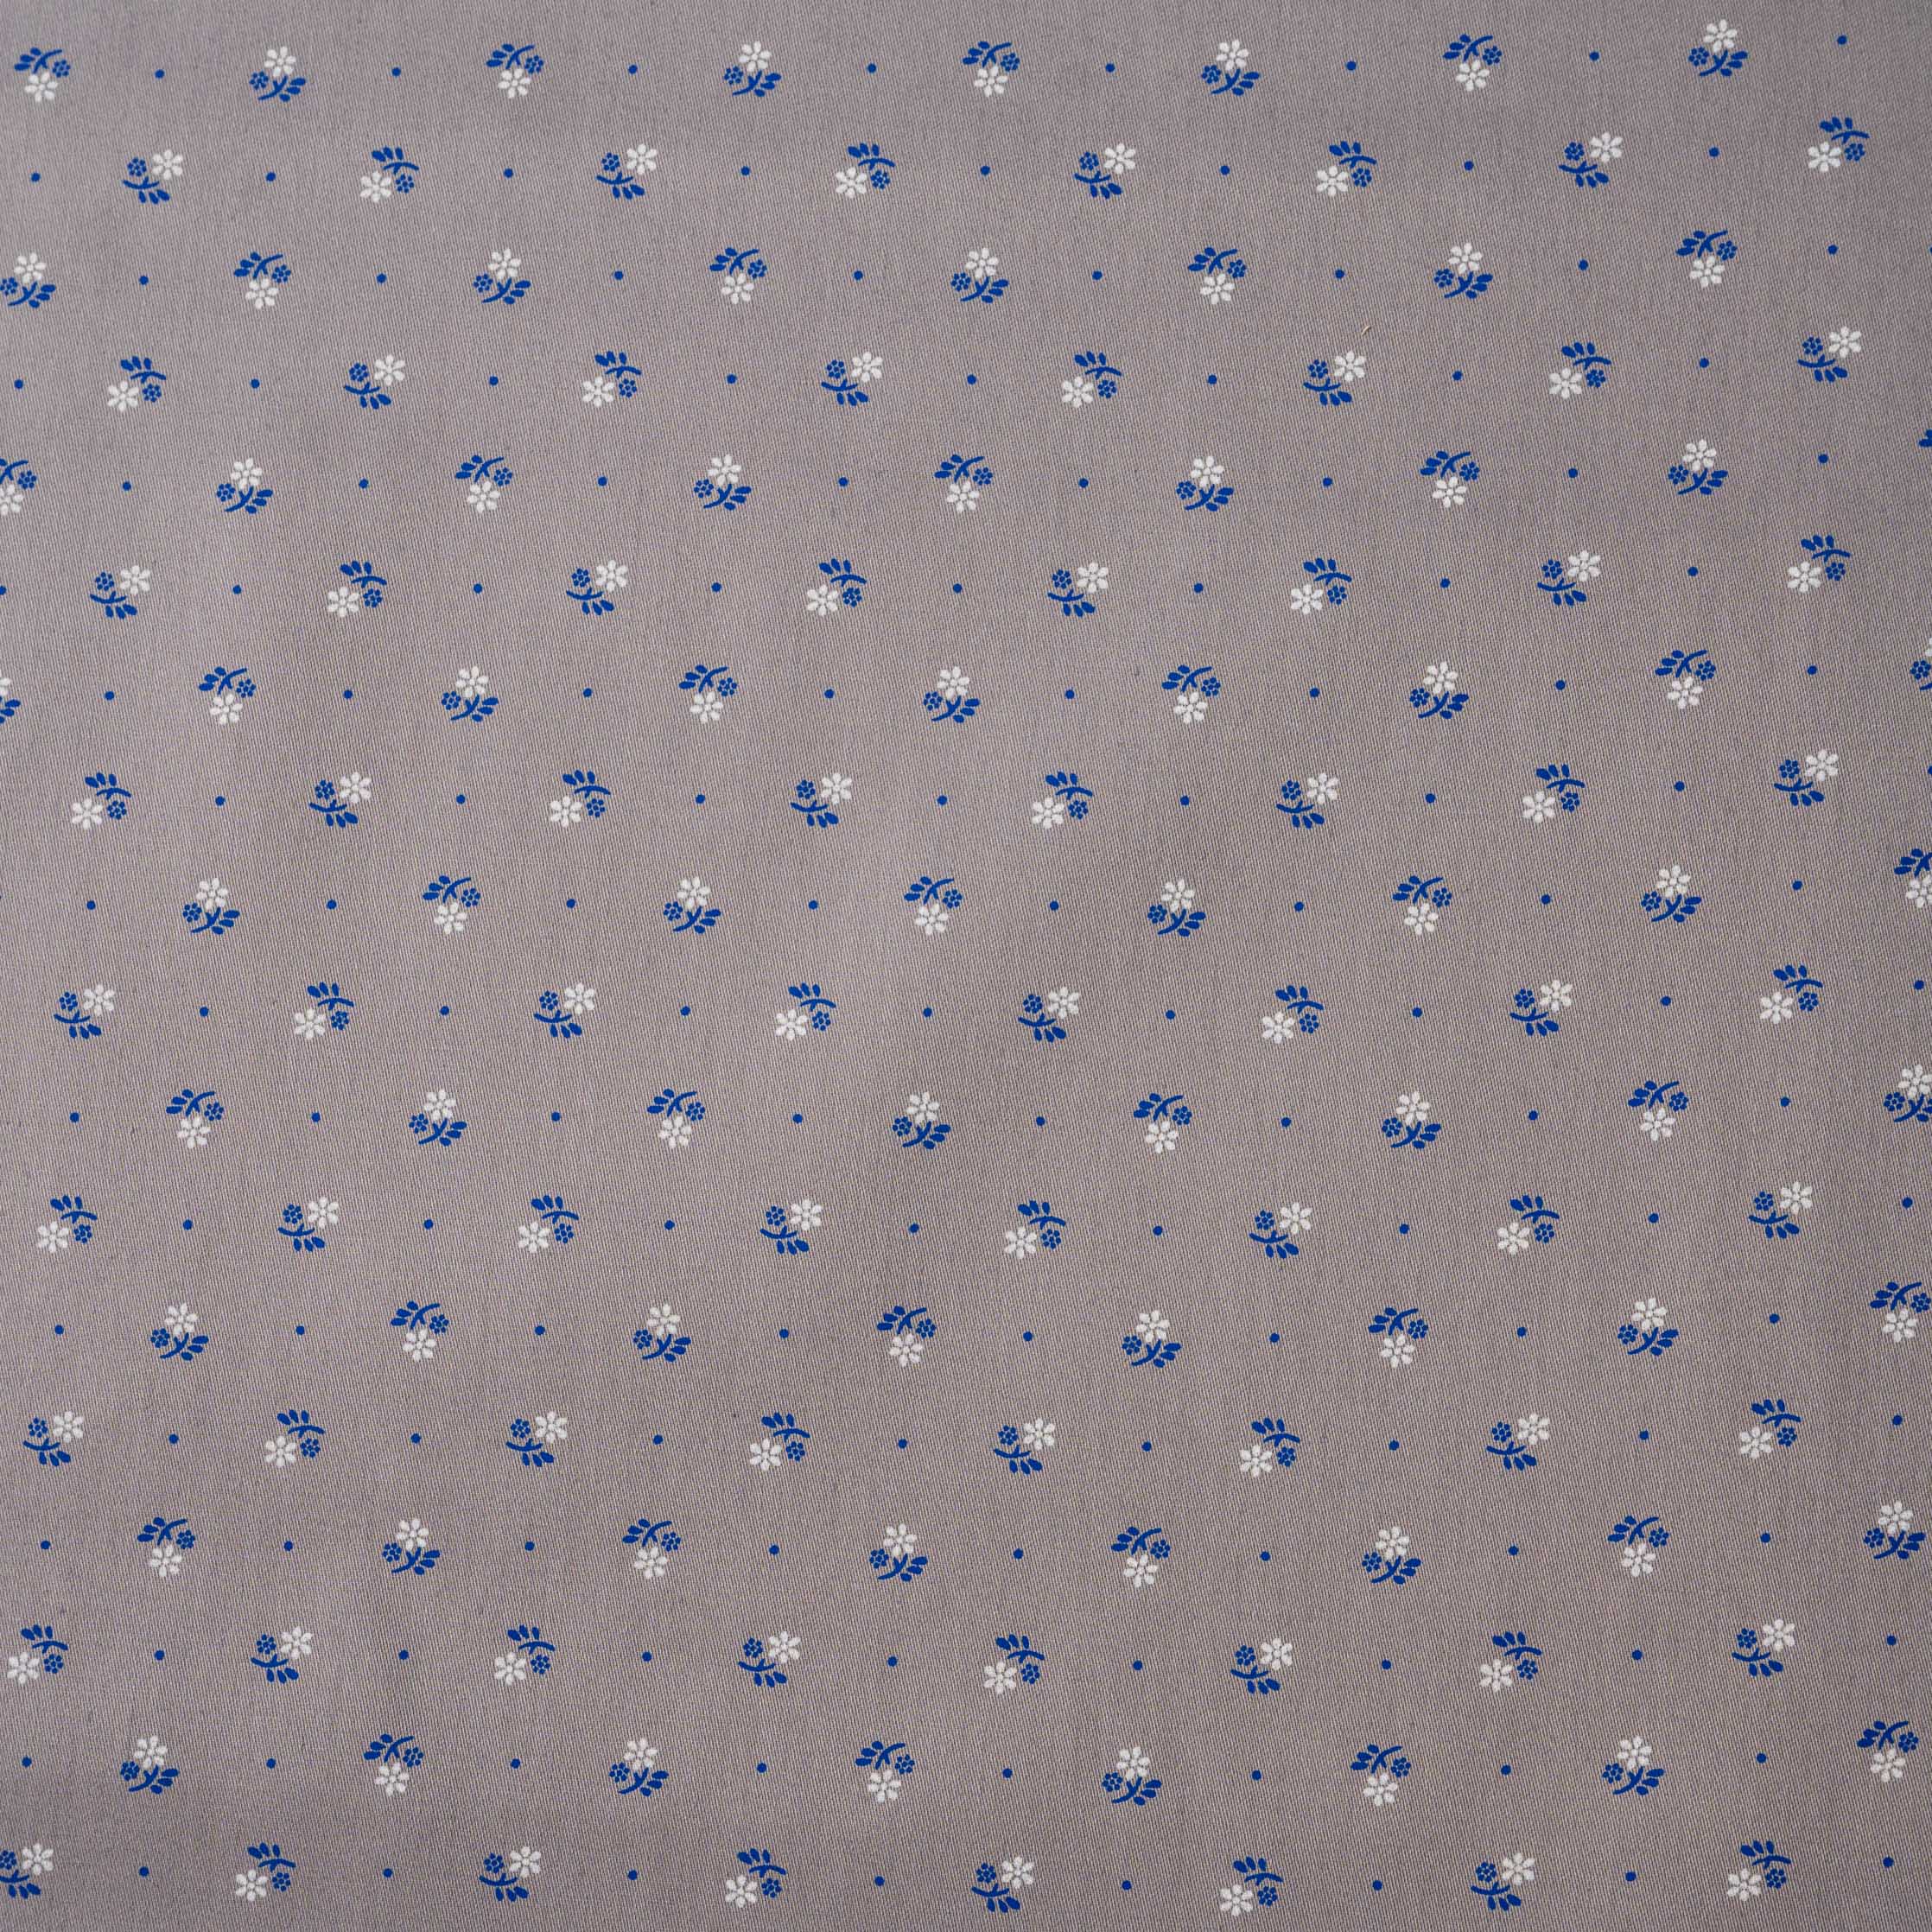 Trachtenstoff Baumwolle Satin geblümt Grau Weiß Blau 0,5m